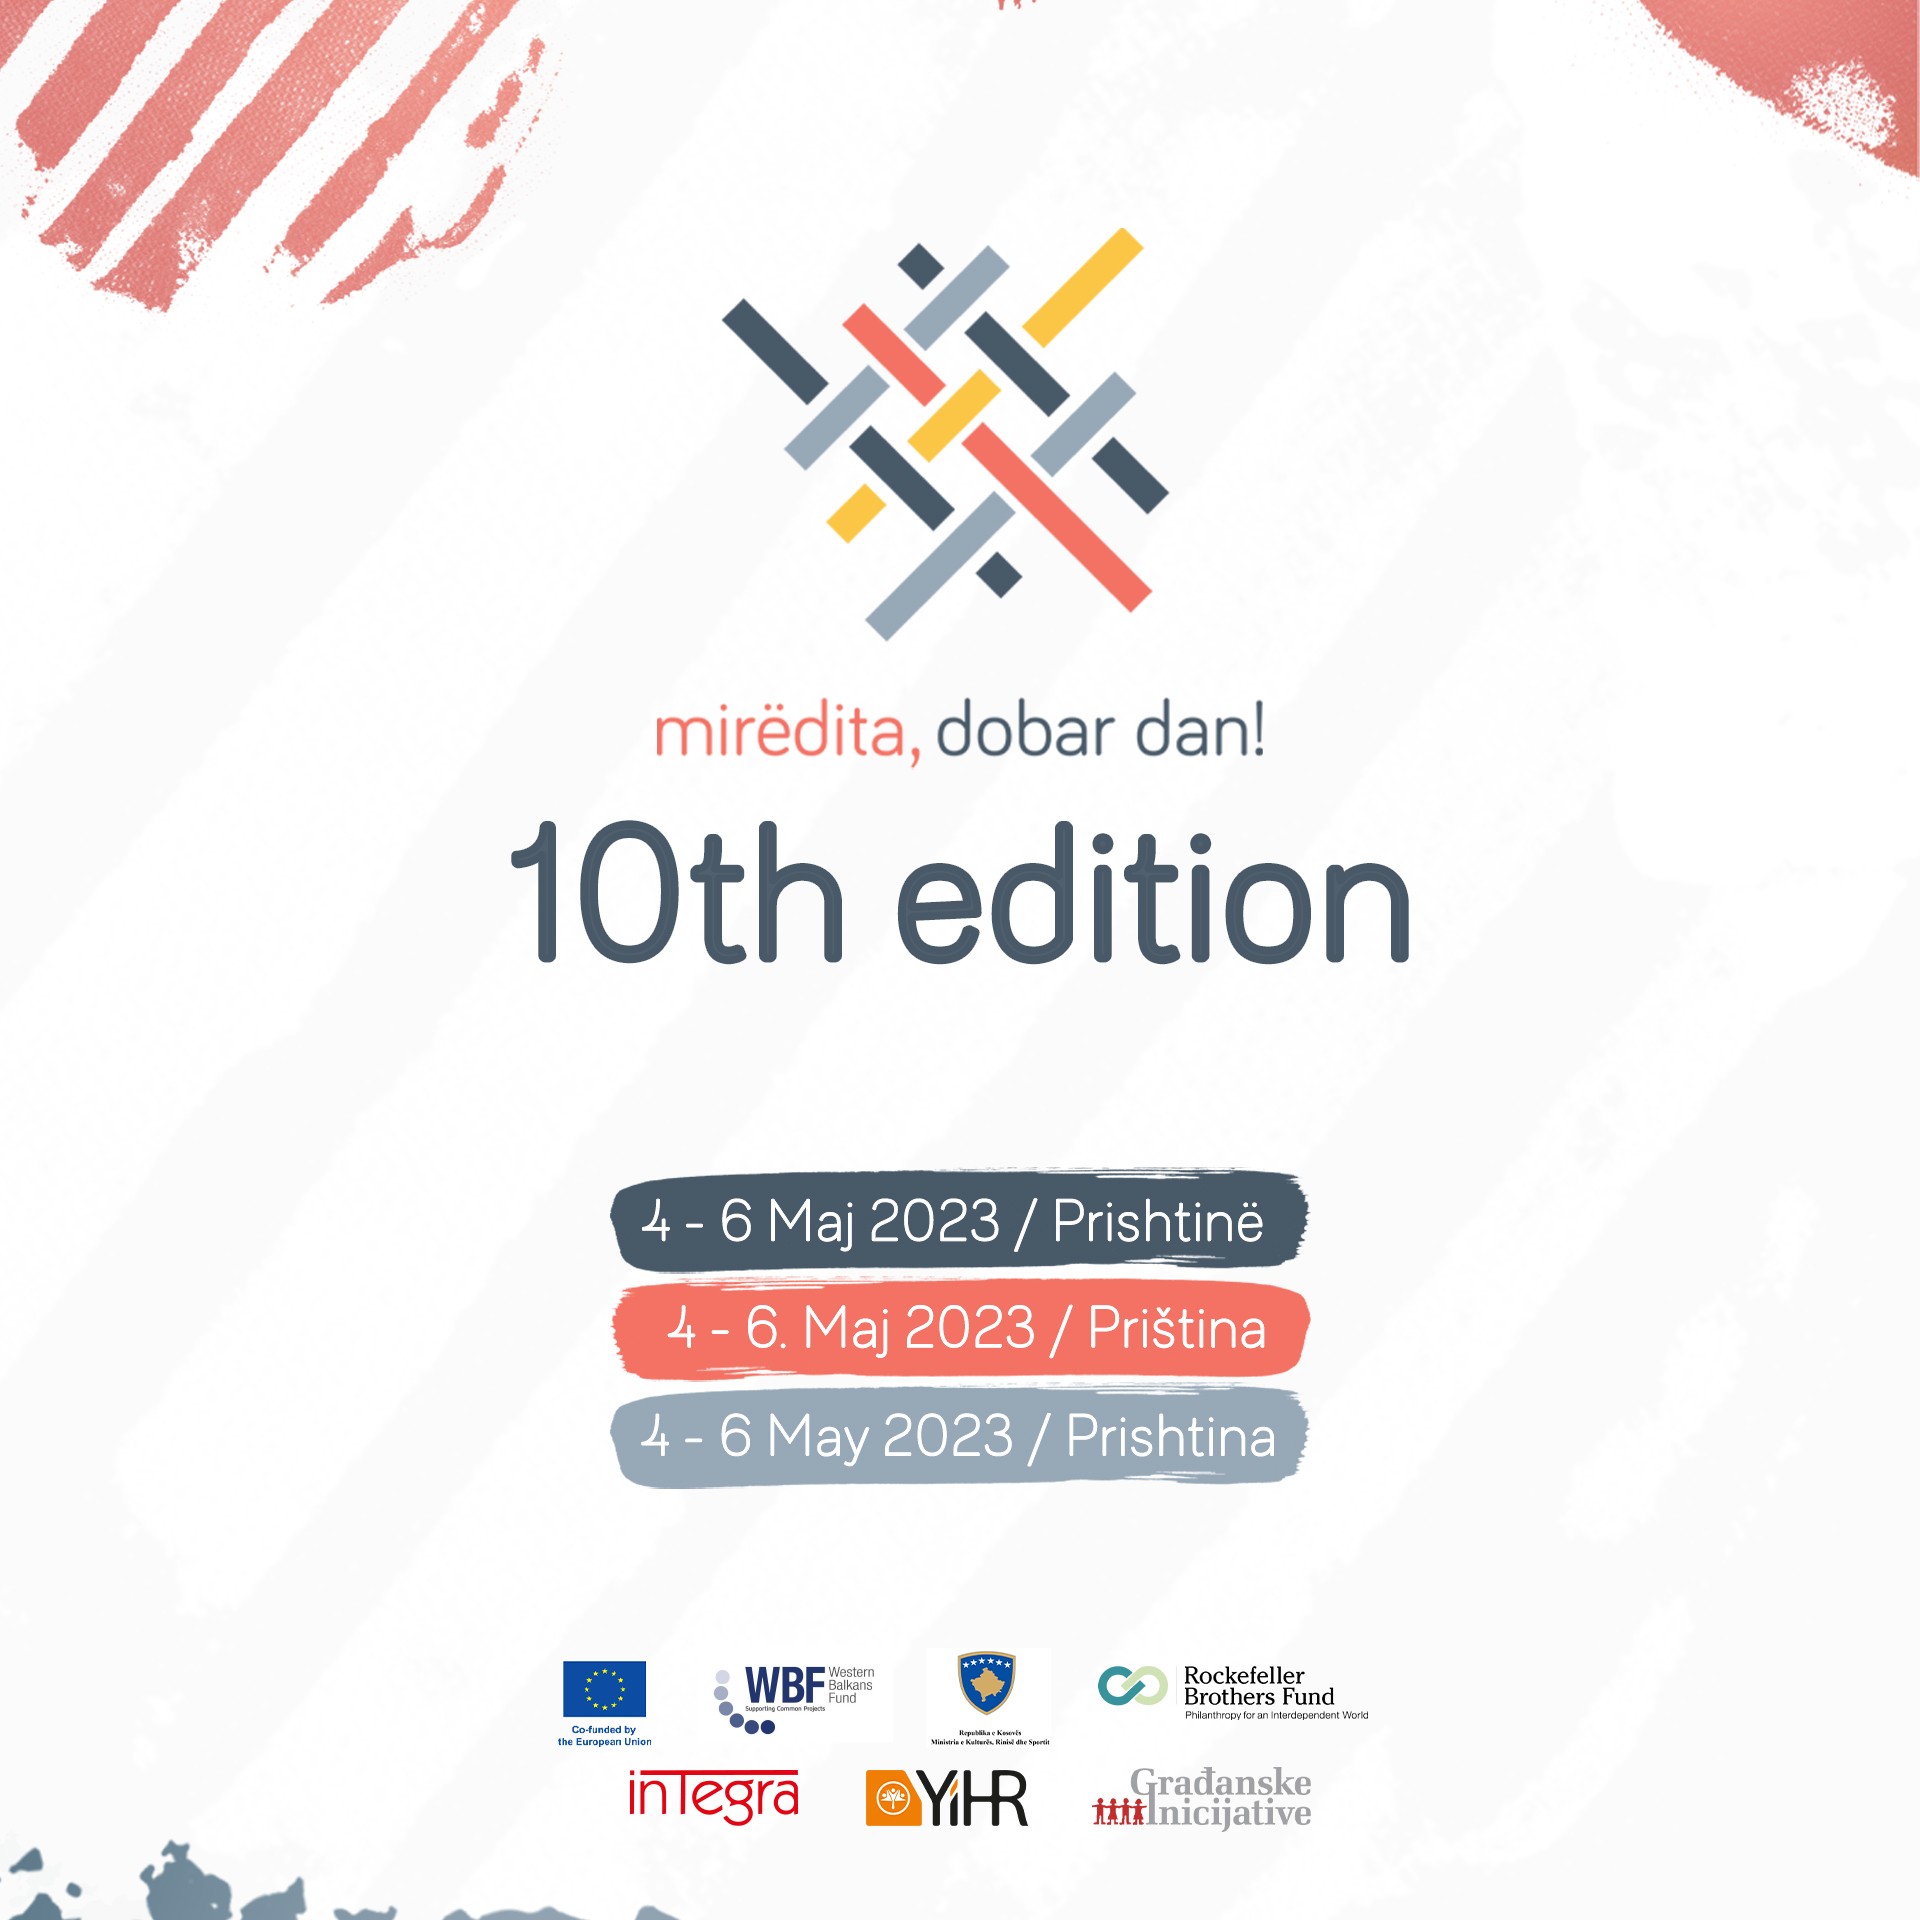 Festivali “Mirëdita, dobar dan!” do të mbahet nga 4 6 maj në Prishtinë